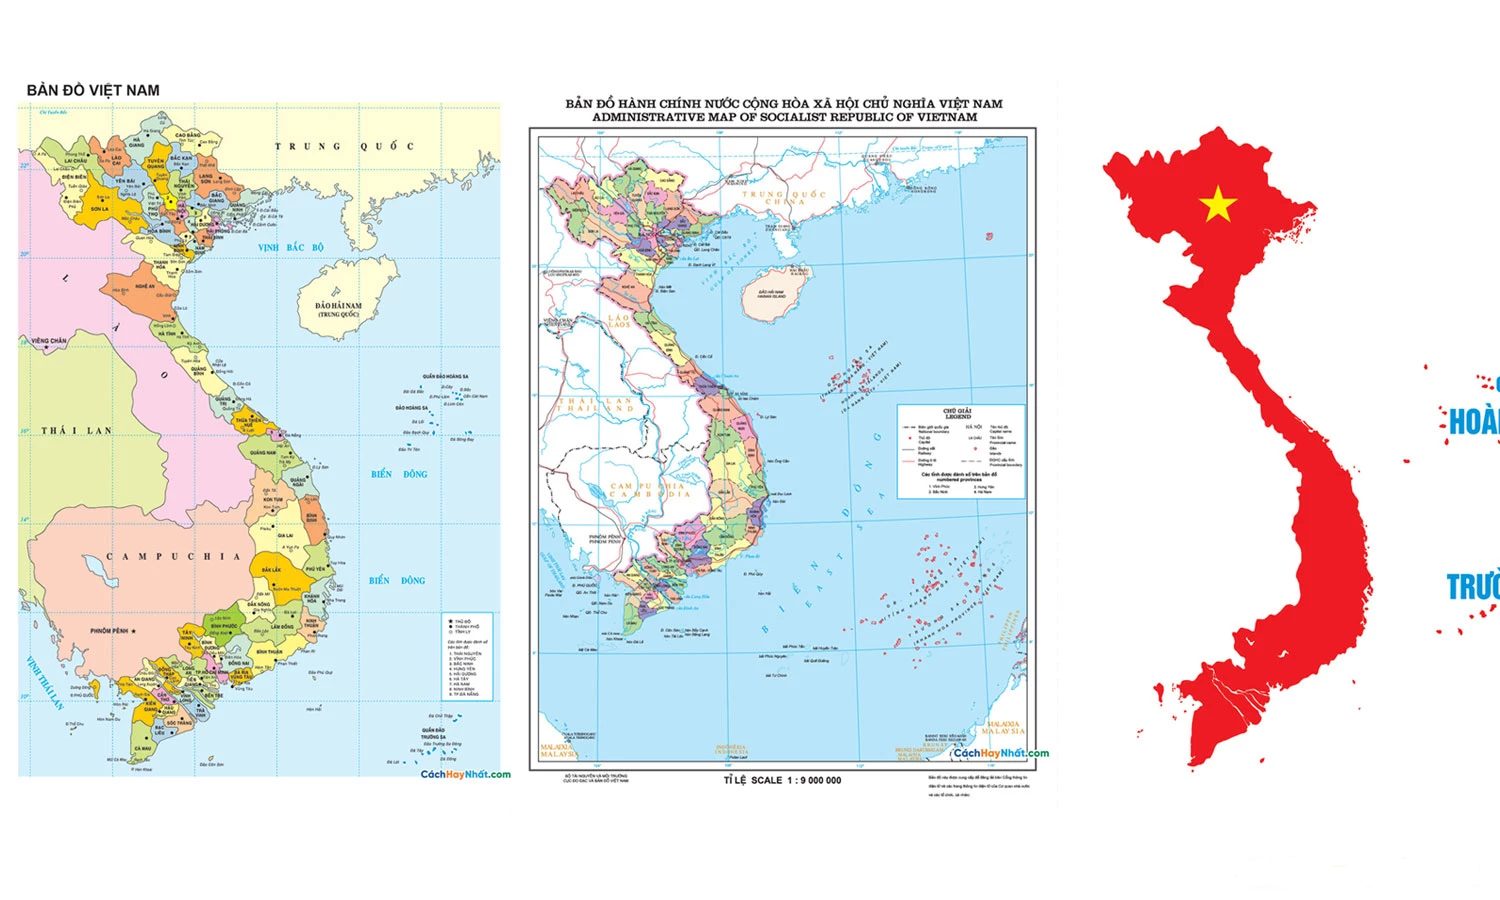 Bản đồ tác giả miền trung Việt Nam sẽ cung cấp cho bạn những thông tin chi tiết về các vùng đất và địa điểm du lịch của miền trung Việt Nam. Từ đó, bạn có thể lập kế hoạch cho chuyến đi của mình và khám phá những điểm đến thú vị nhất của miền trung Việt Nam.